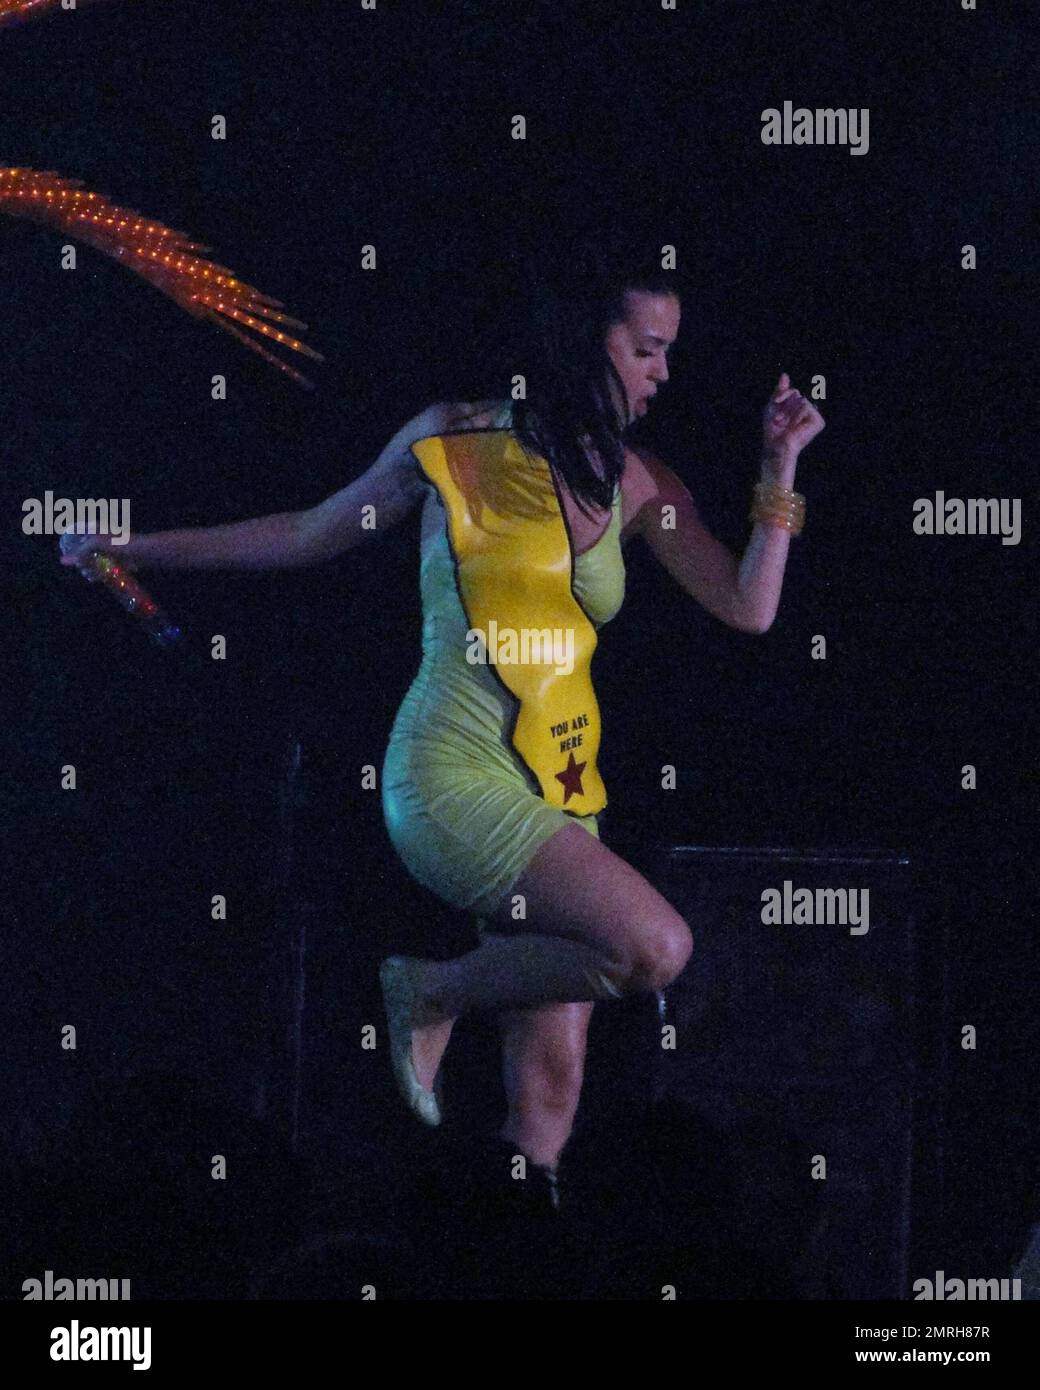 Katy Perry, chanteur-compositeur international, se produit en direct à  Atlantis Paradise Island, dans la Grand Ballroom. Perry s'est produit  devant les clients de l'Atlantis, portant une robe en caoutchouc vert  citron ornée